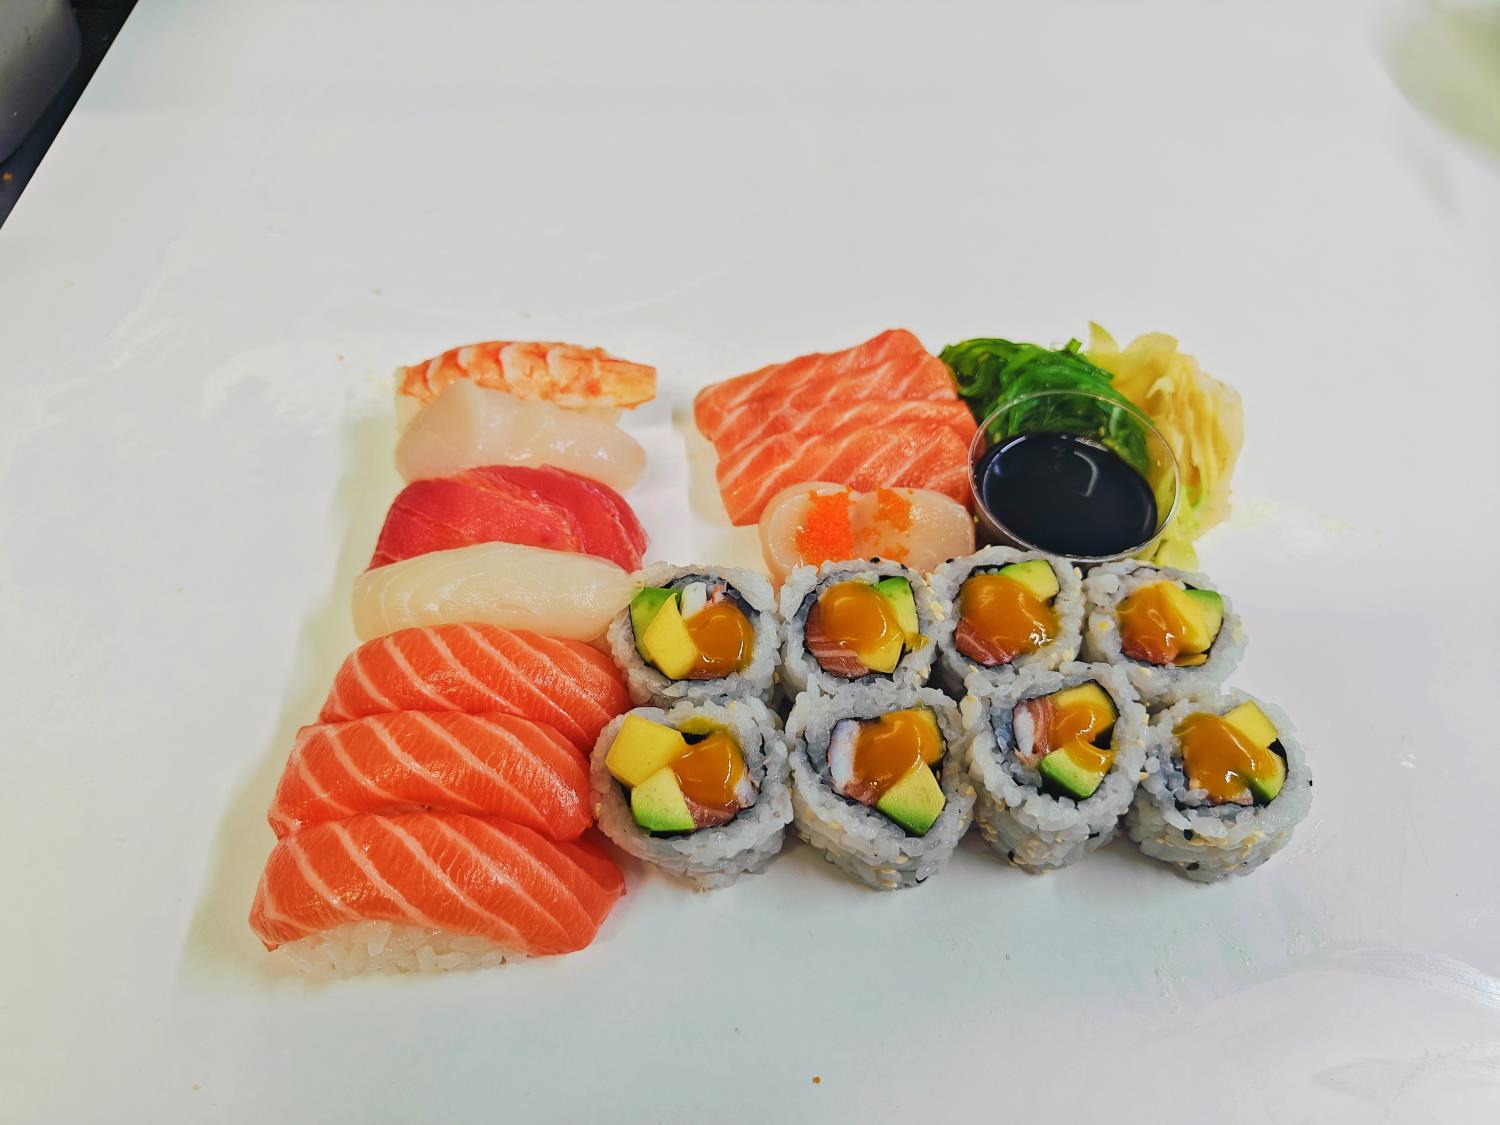 5. XL sushi & sashimi